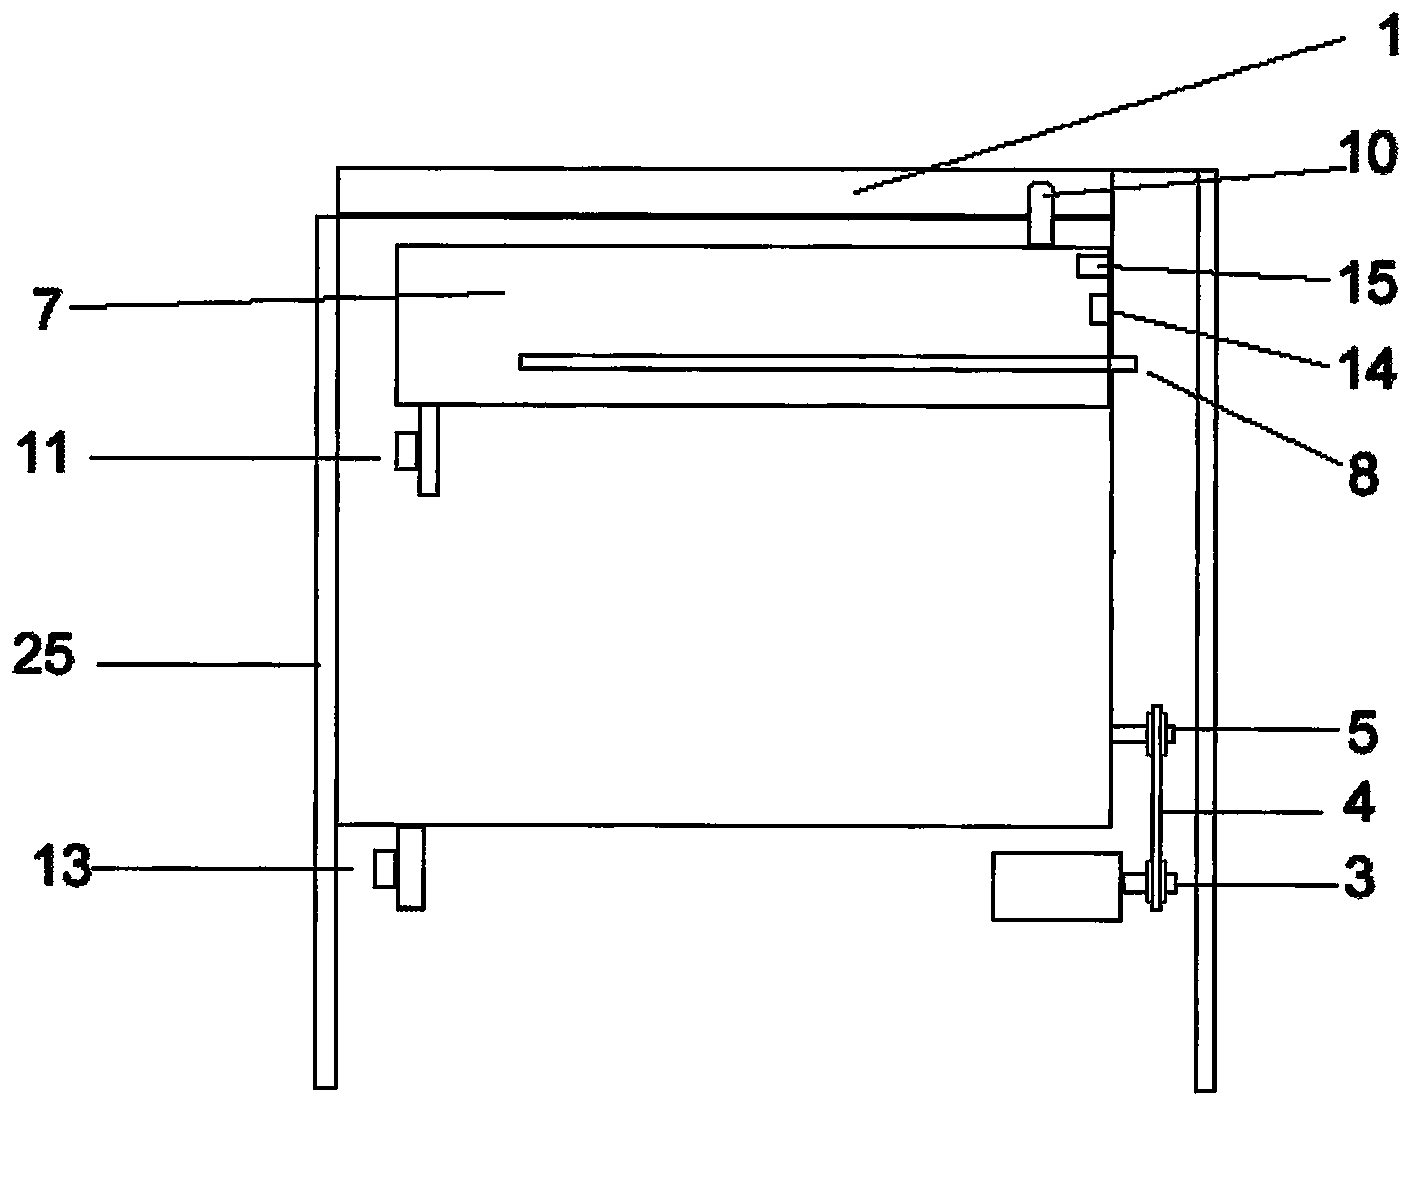 Dual-shaft water stirring type dish washing machine